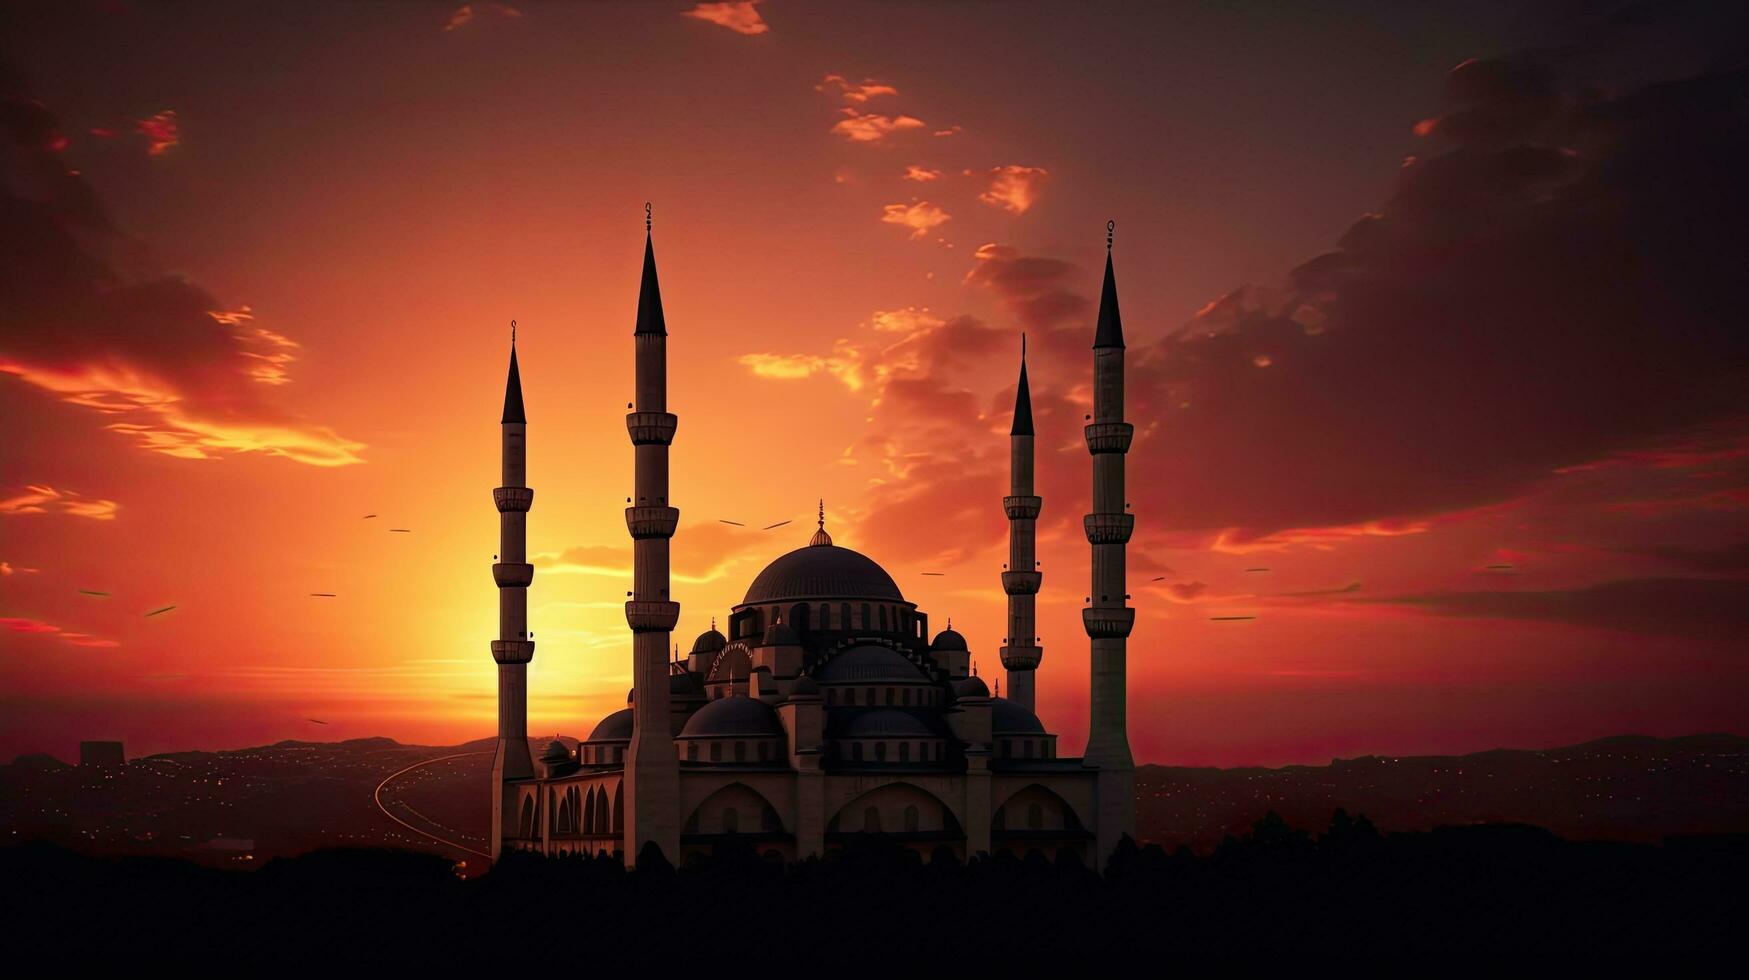 beim Sonnenuntergang Minarette von Moscheen Silhouette während Ramadan thematisch iftar und Abend Gebet symbolisieren Istanbul foto